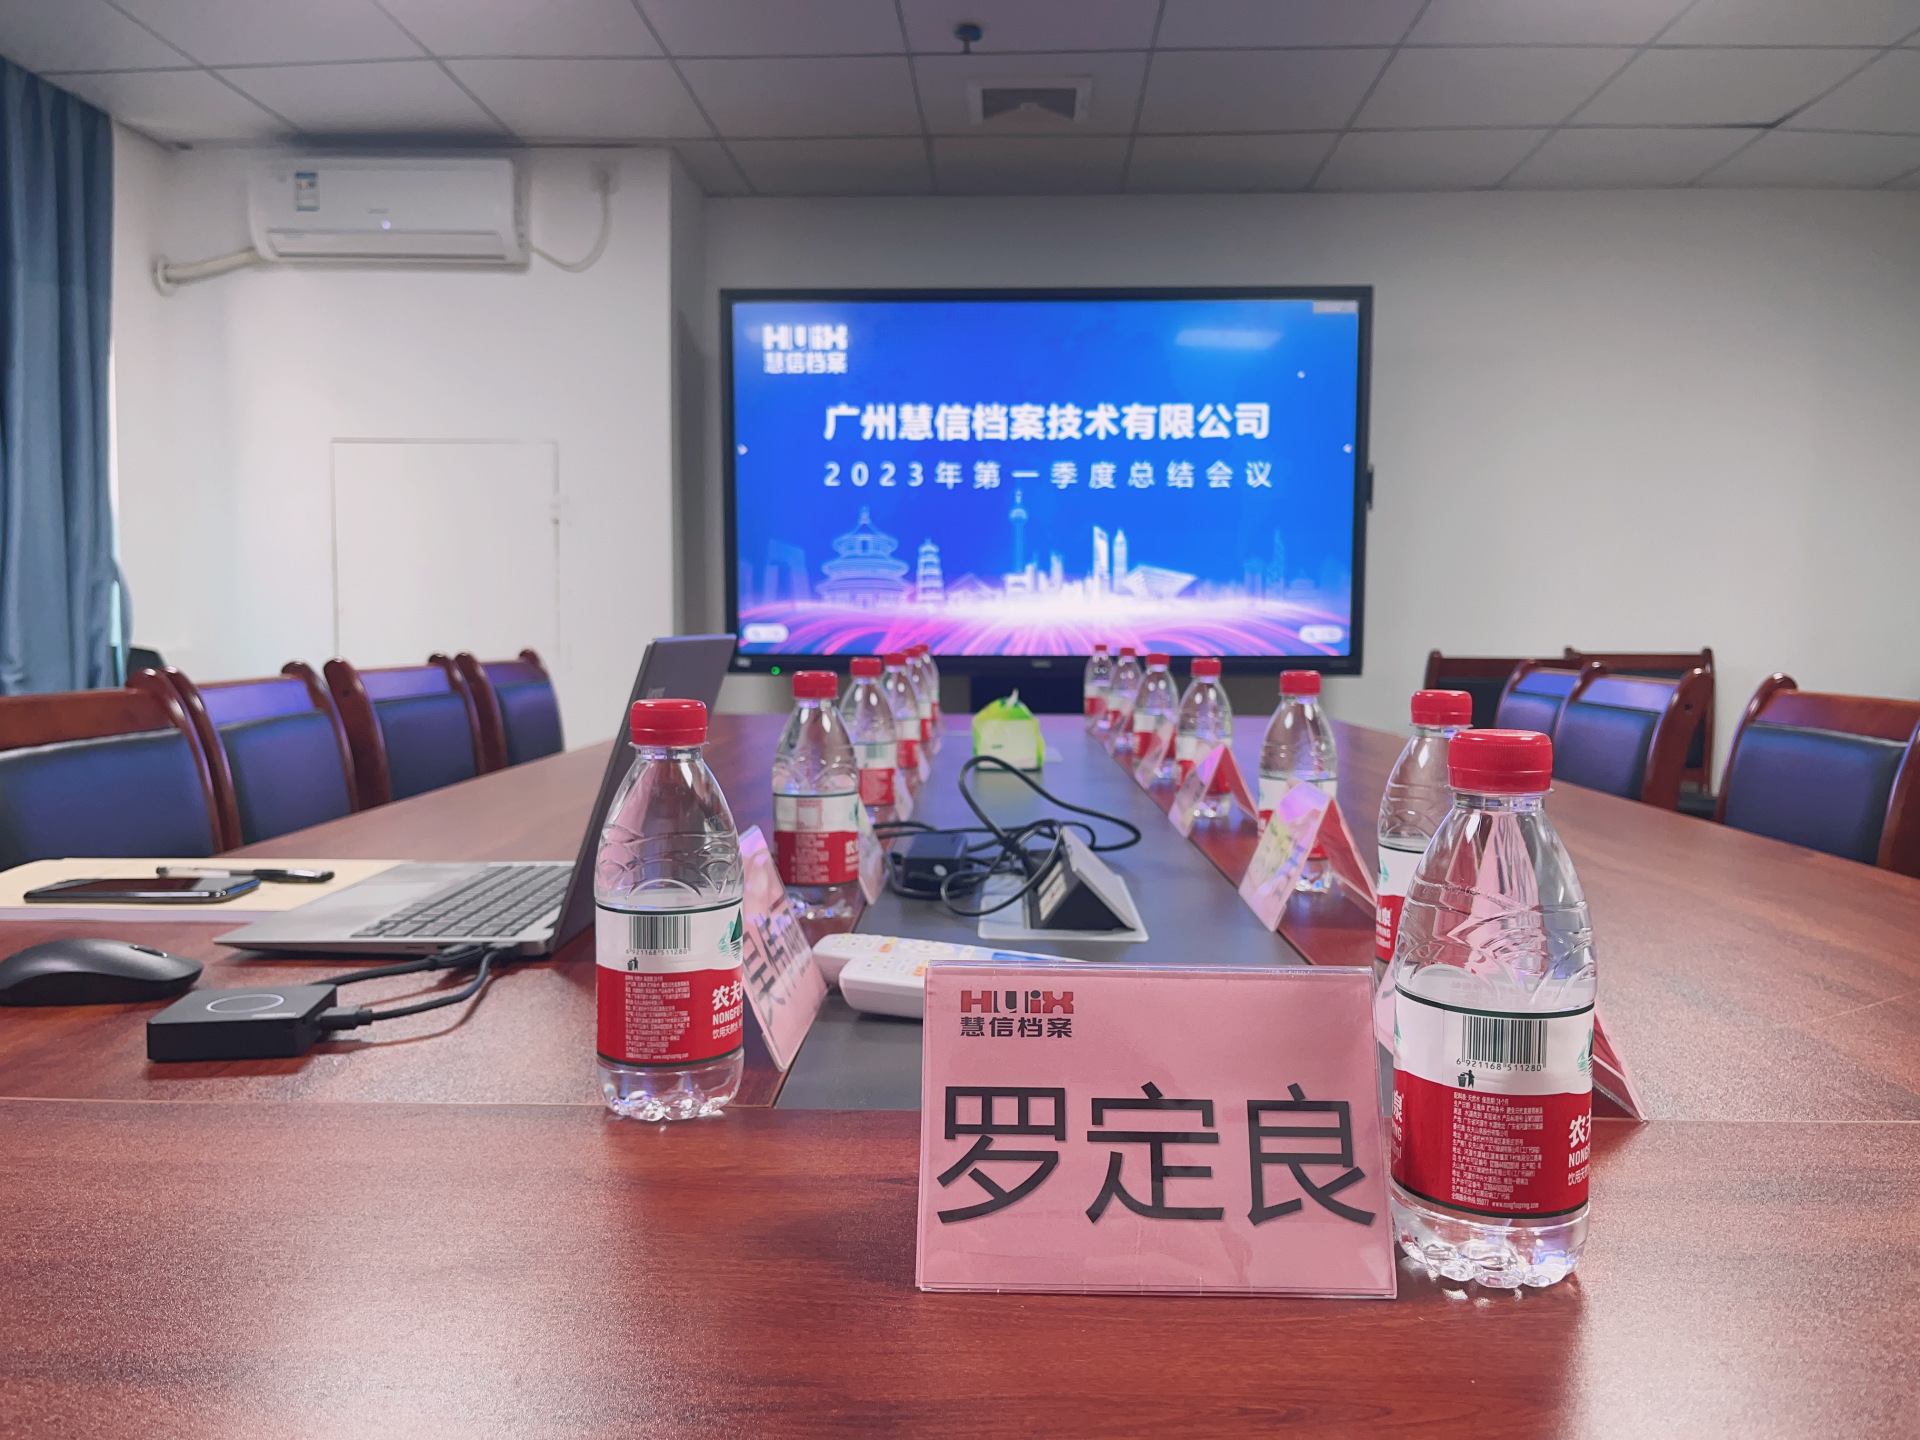 广州慧信档案技术有限公司召开2023年第一季度总结会